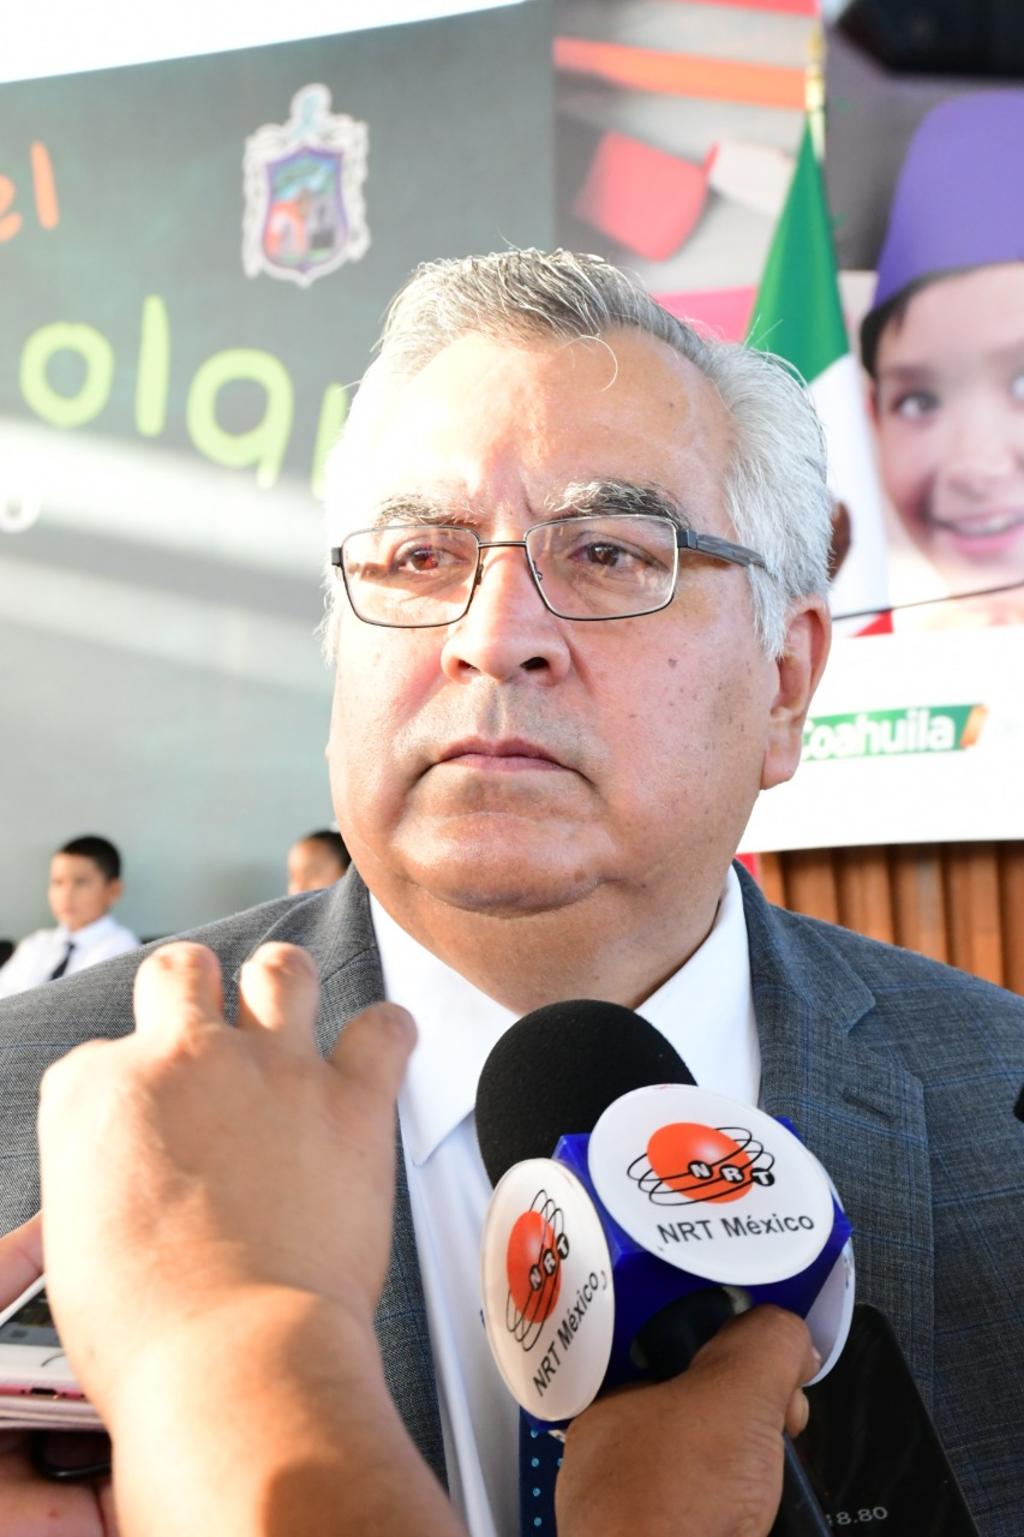 El jefe policiaco explicó que la instrucción del alcalde Jesús Alfredo Paredes López, fue clara y directa: “No seremos parte de ese tipo de operativos”. (EL SIGLO COAHUILA)